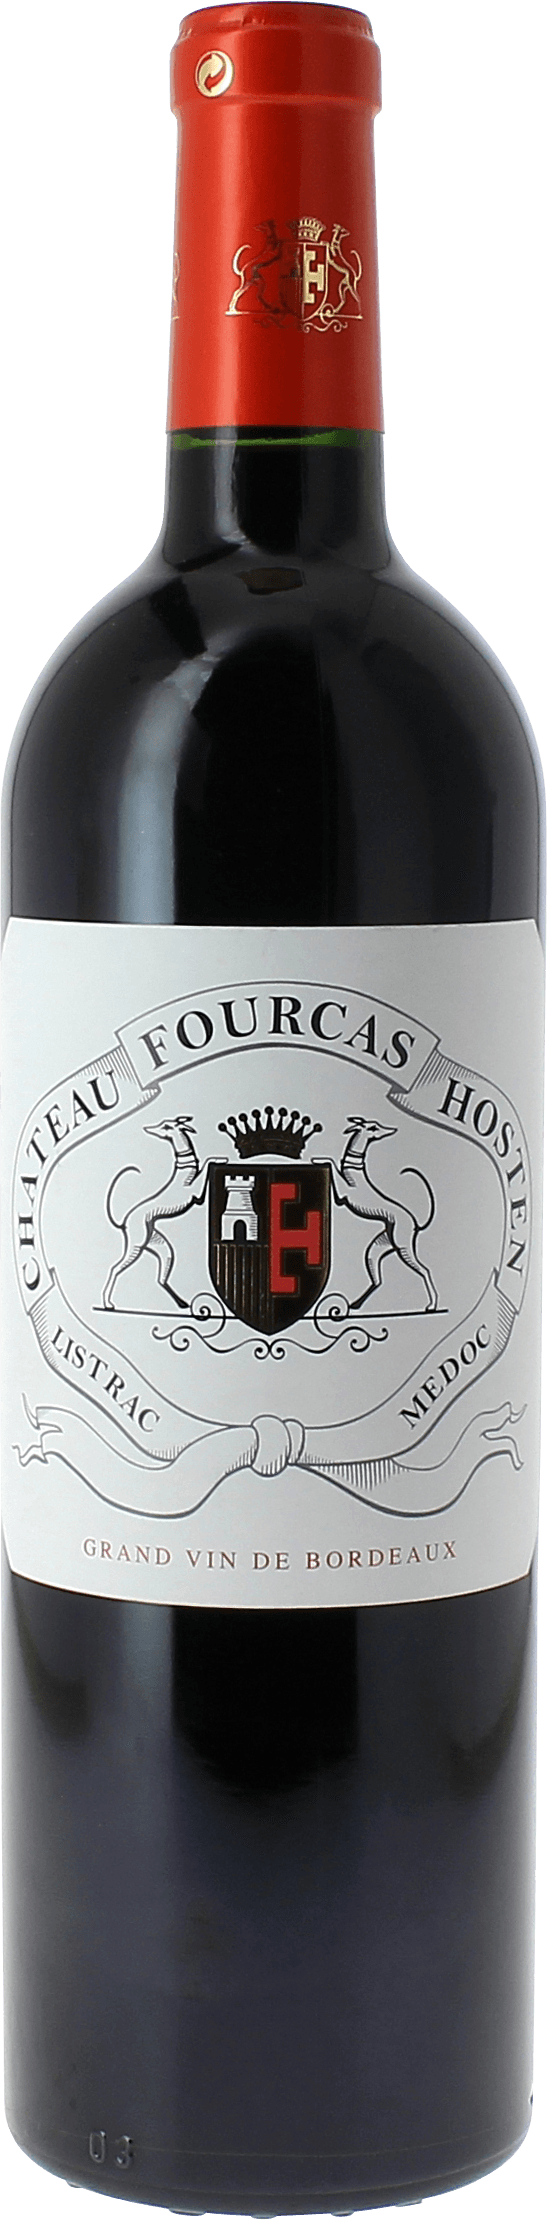 Fourcas hosten 2019  Listrac Mdoc, Slection Bordeaux Rouge